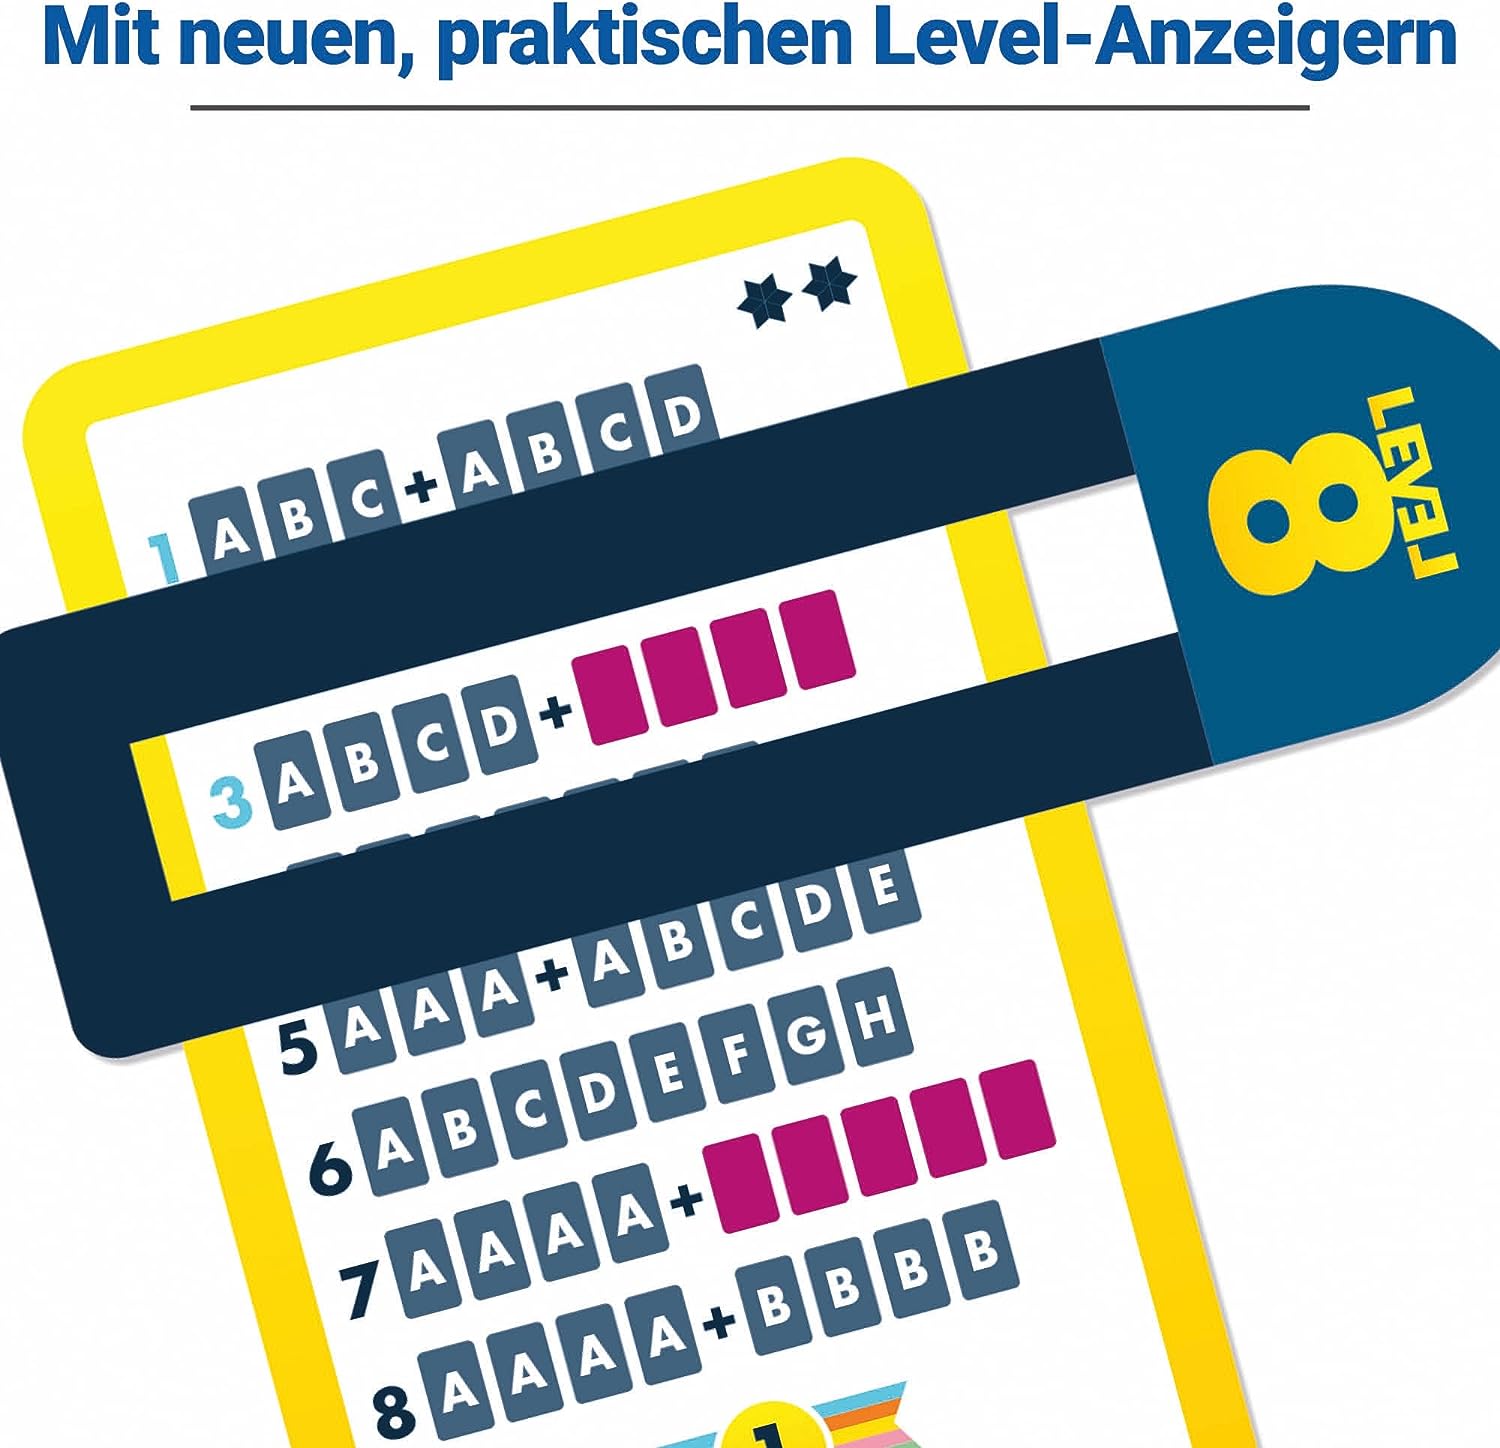 Ravensburger 20865 - Level 8, Das beliebte Kartenspiel für 2-6 Spieler ab 8 Jahren / Familienspiel / Reisespiel